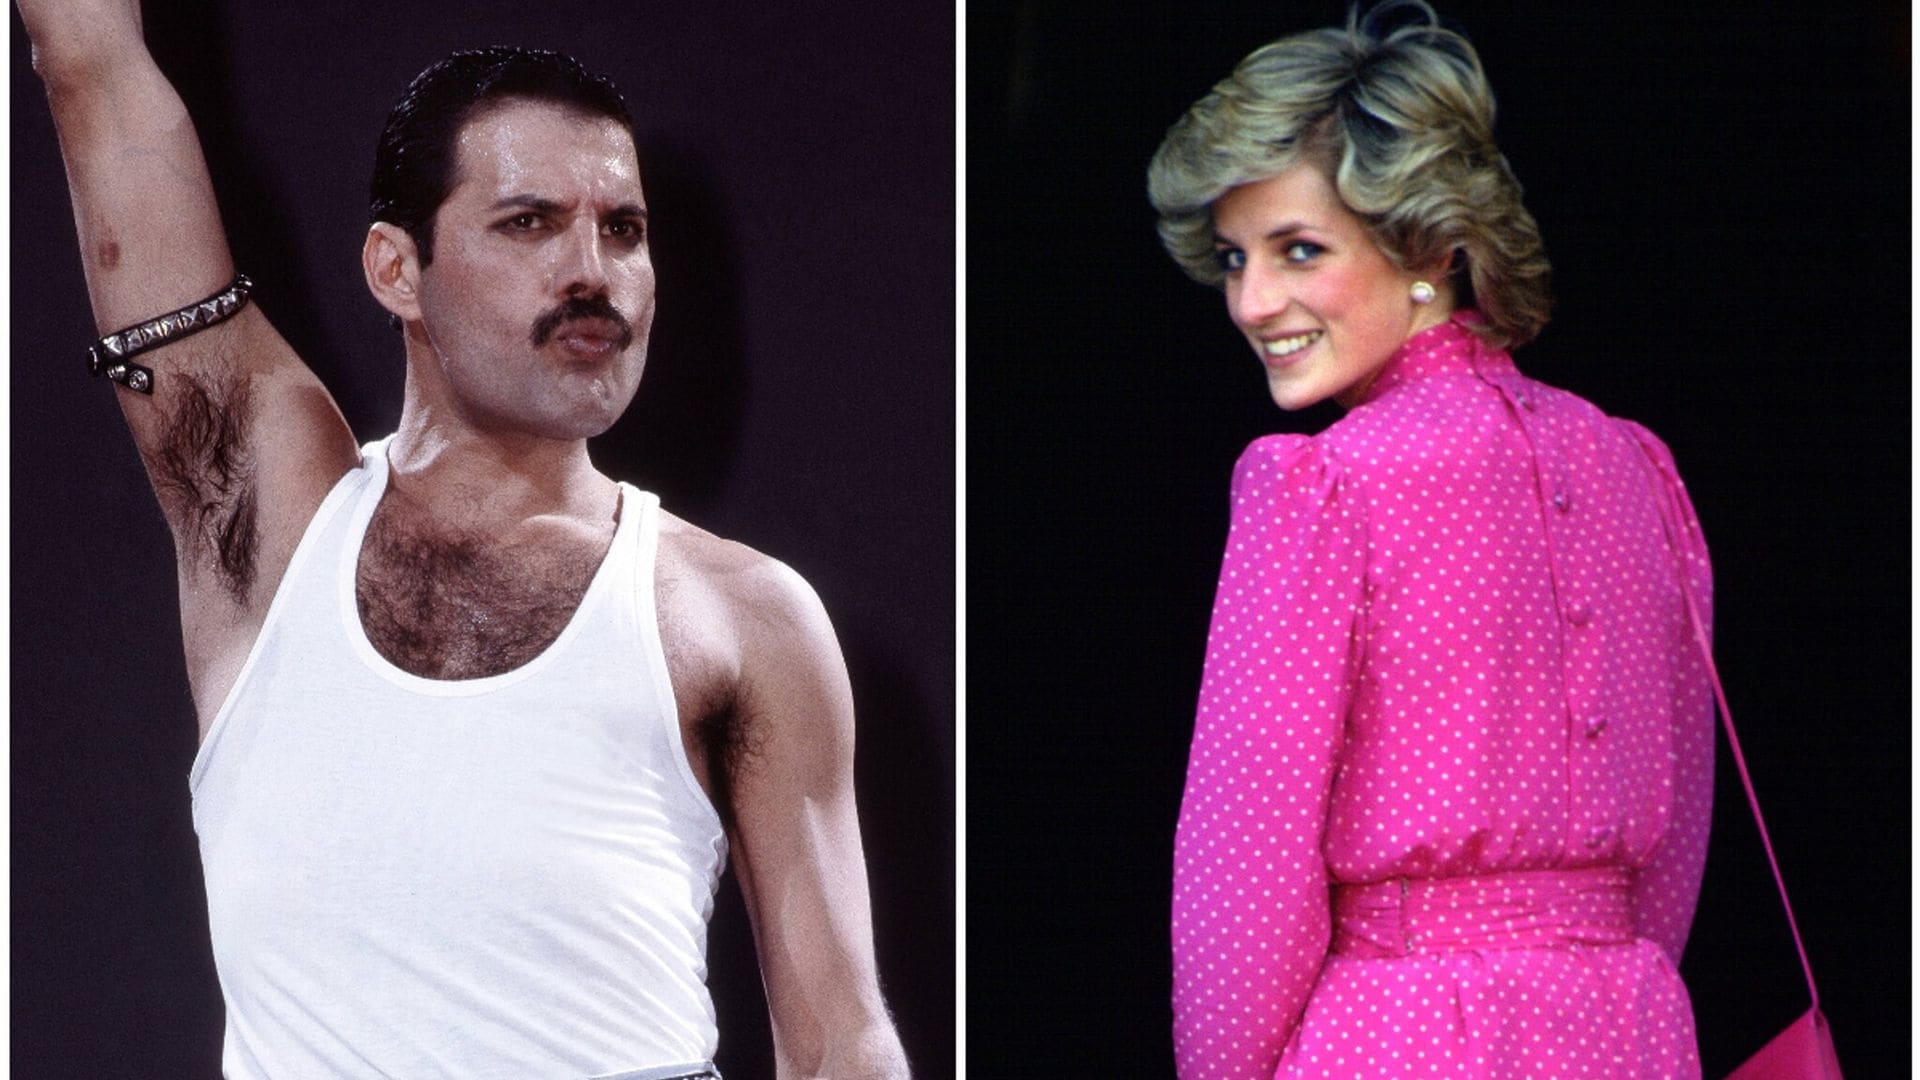 La anécdota poco conocida entre la princesa Diana y Freddie Mercury en un bar